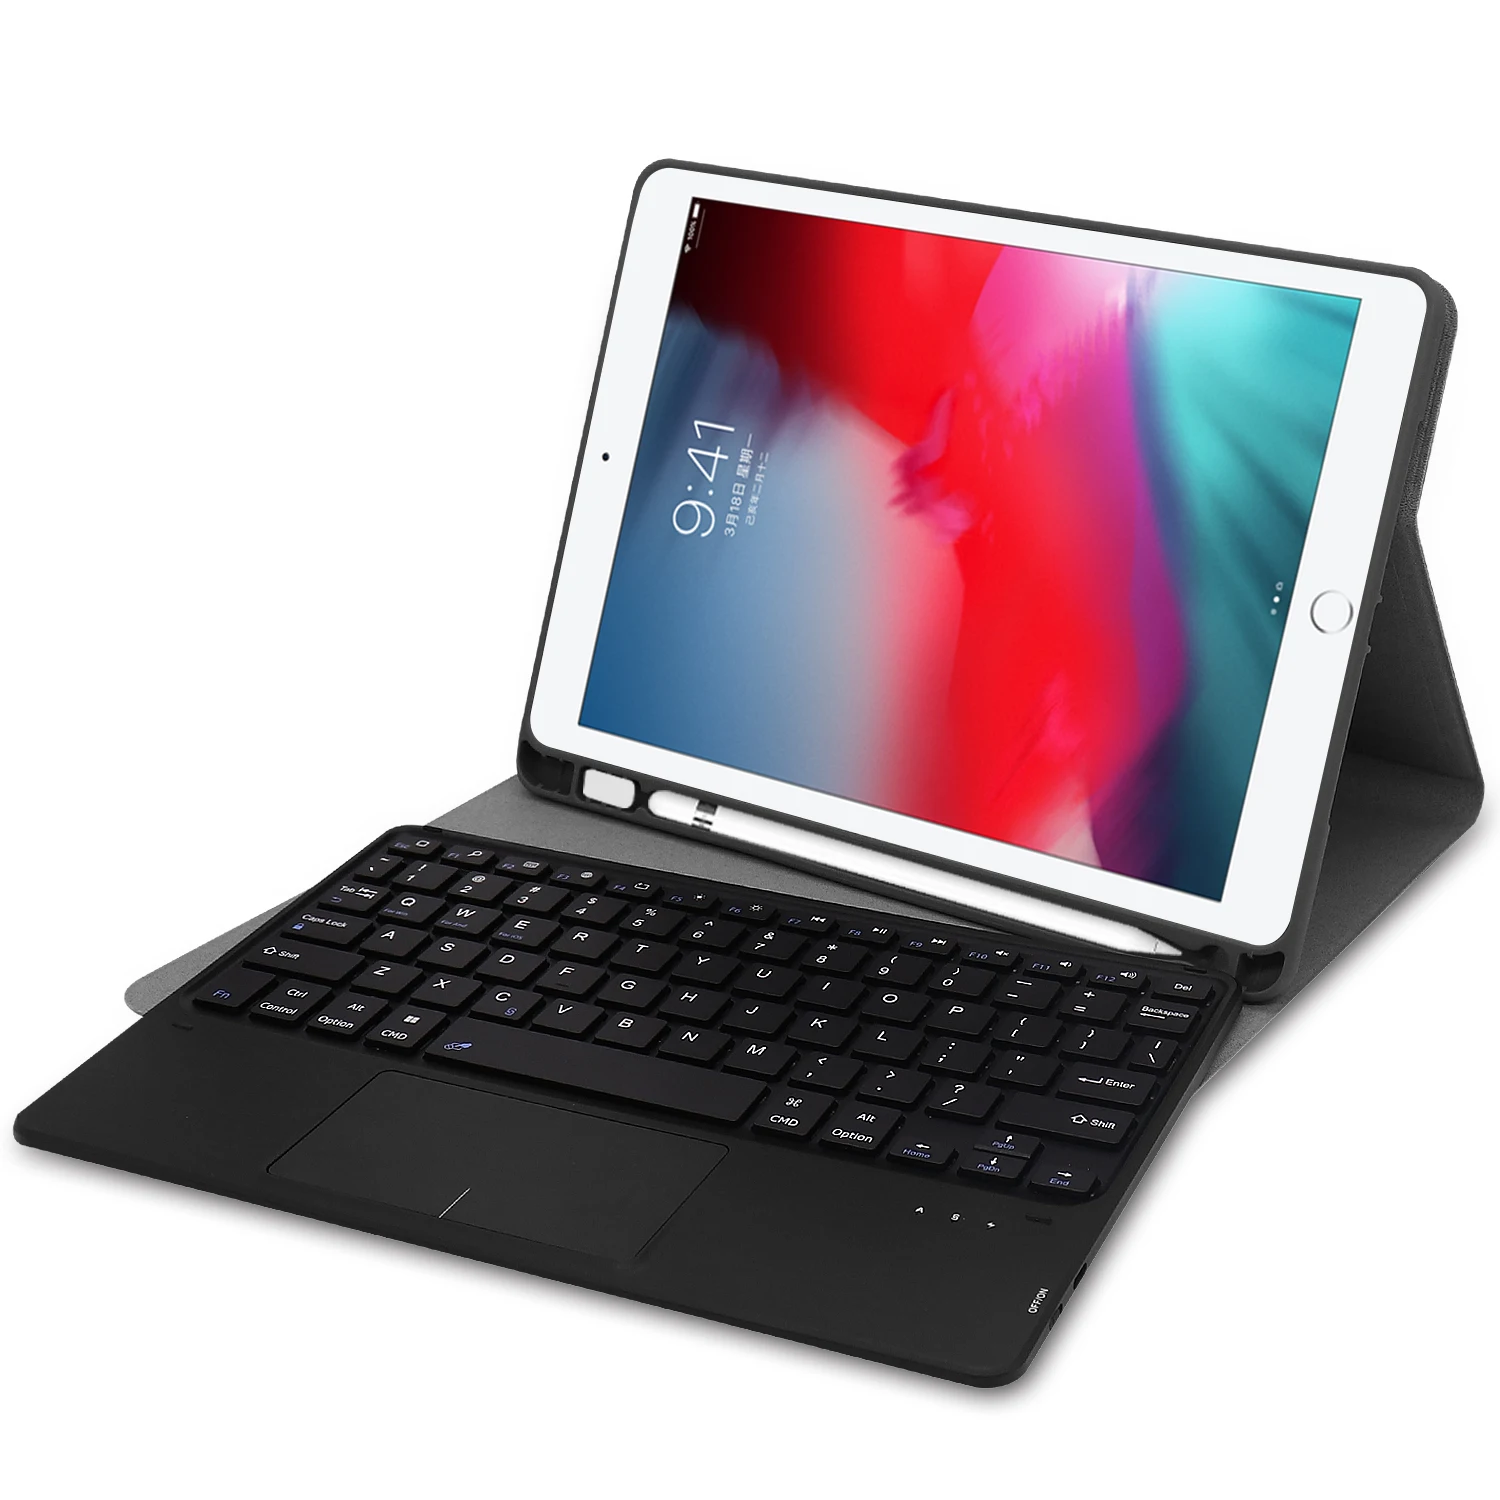 Тачпад клавиатура чехол для iPad mini 5 7,9 6th 9,7 Pro 11 Air 3 10,5 Чехол коврик для мыши и клавиатуры для iPad 7th 10,2 клавиатура